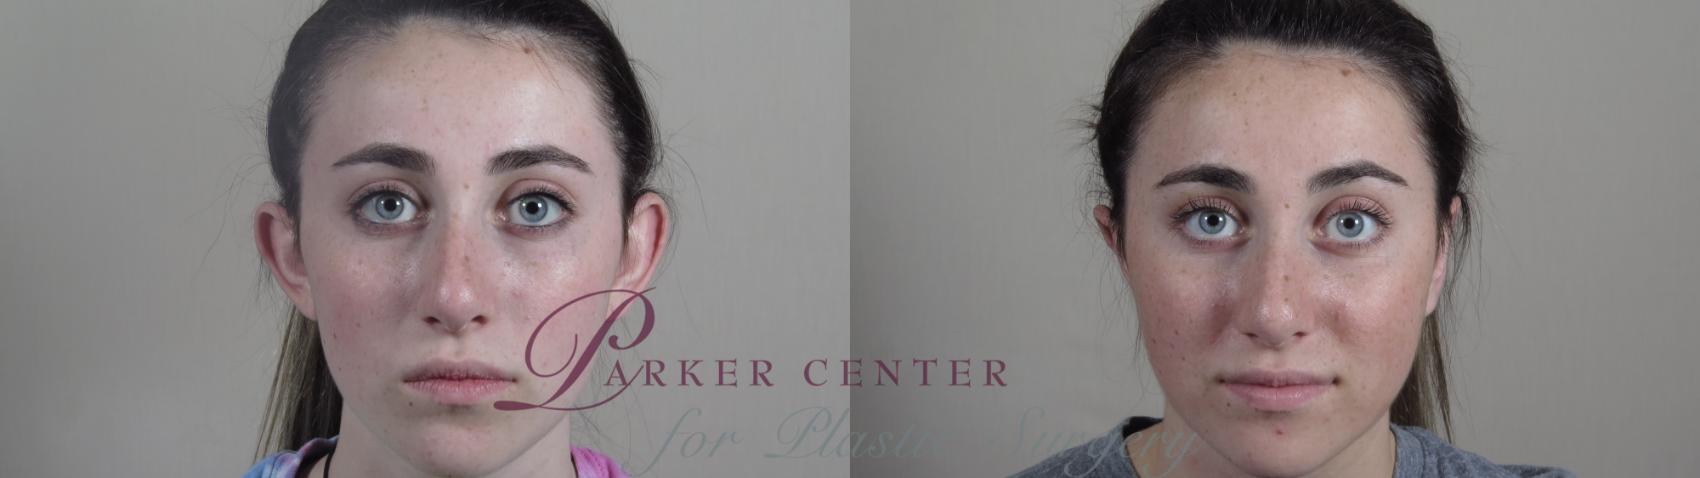 Ear Surgery Case 985 Before & After Front | Paramus, NJ | Parker Center for Plastic Surgery